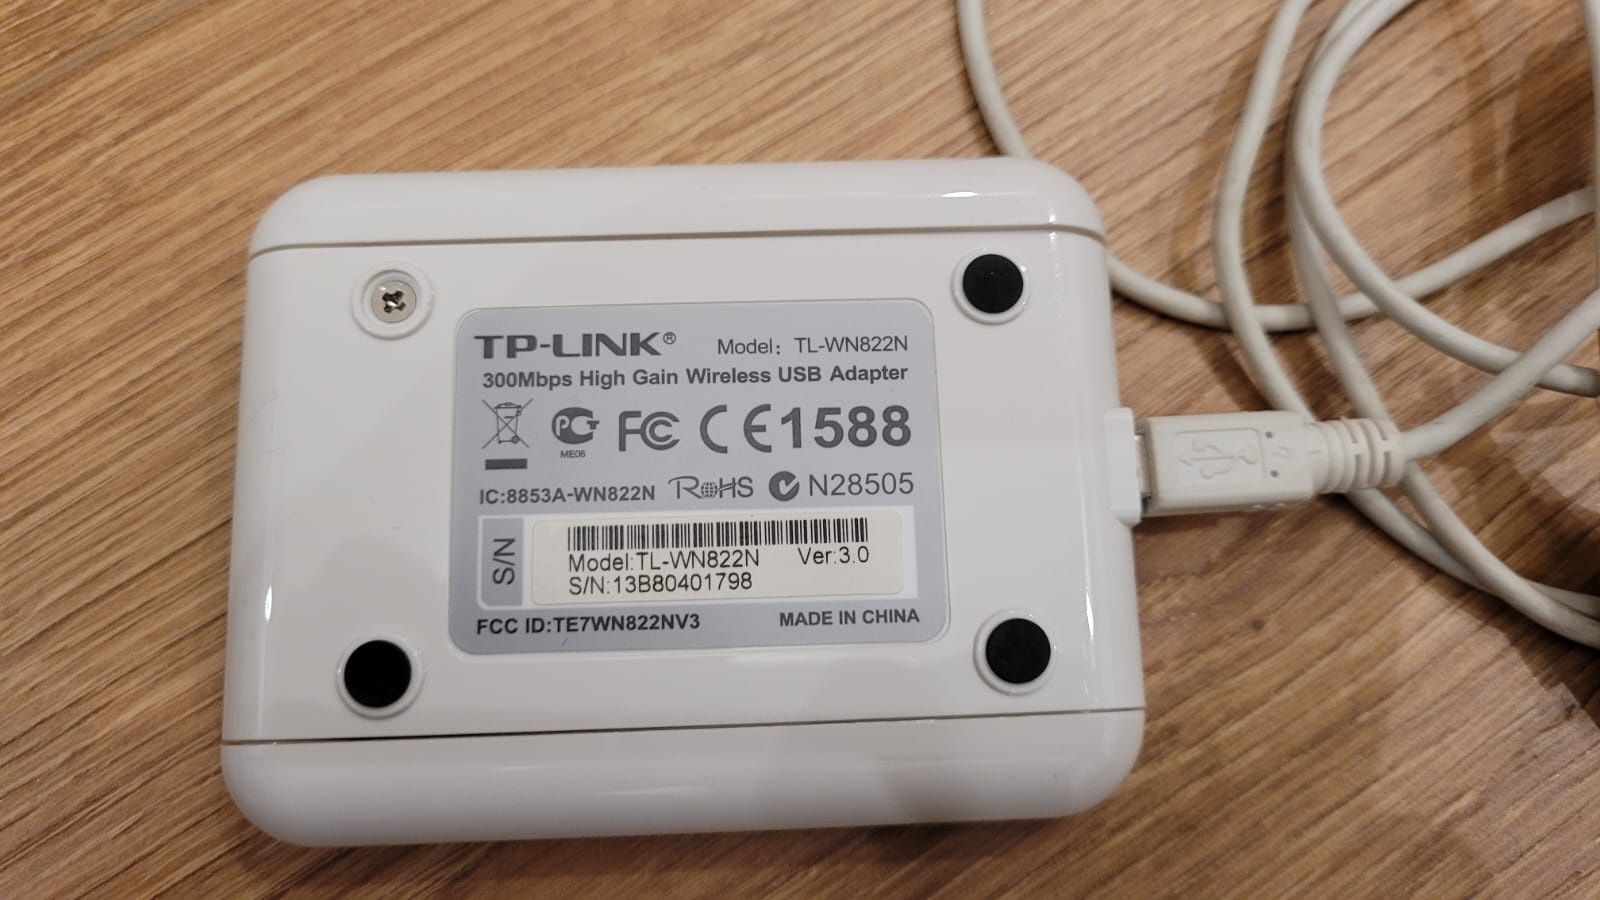 Karta sieciowa bezprzewodowa TP-LINK TL-WN822N na USB

TP-LINK TL-WN82